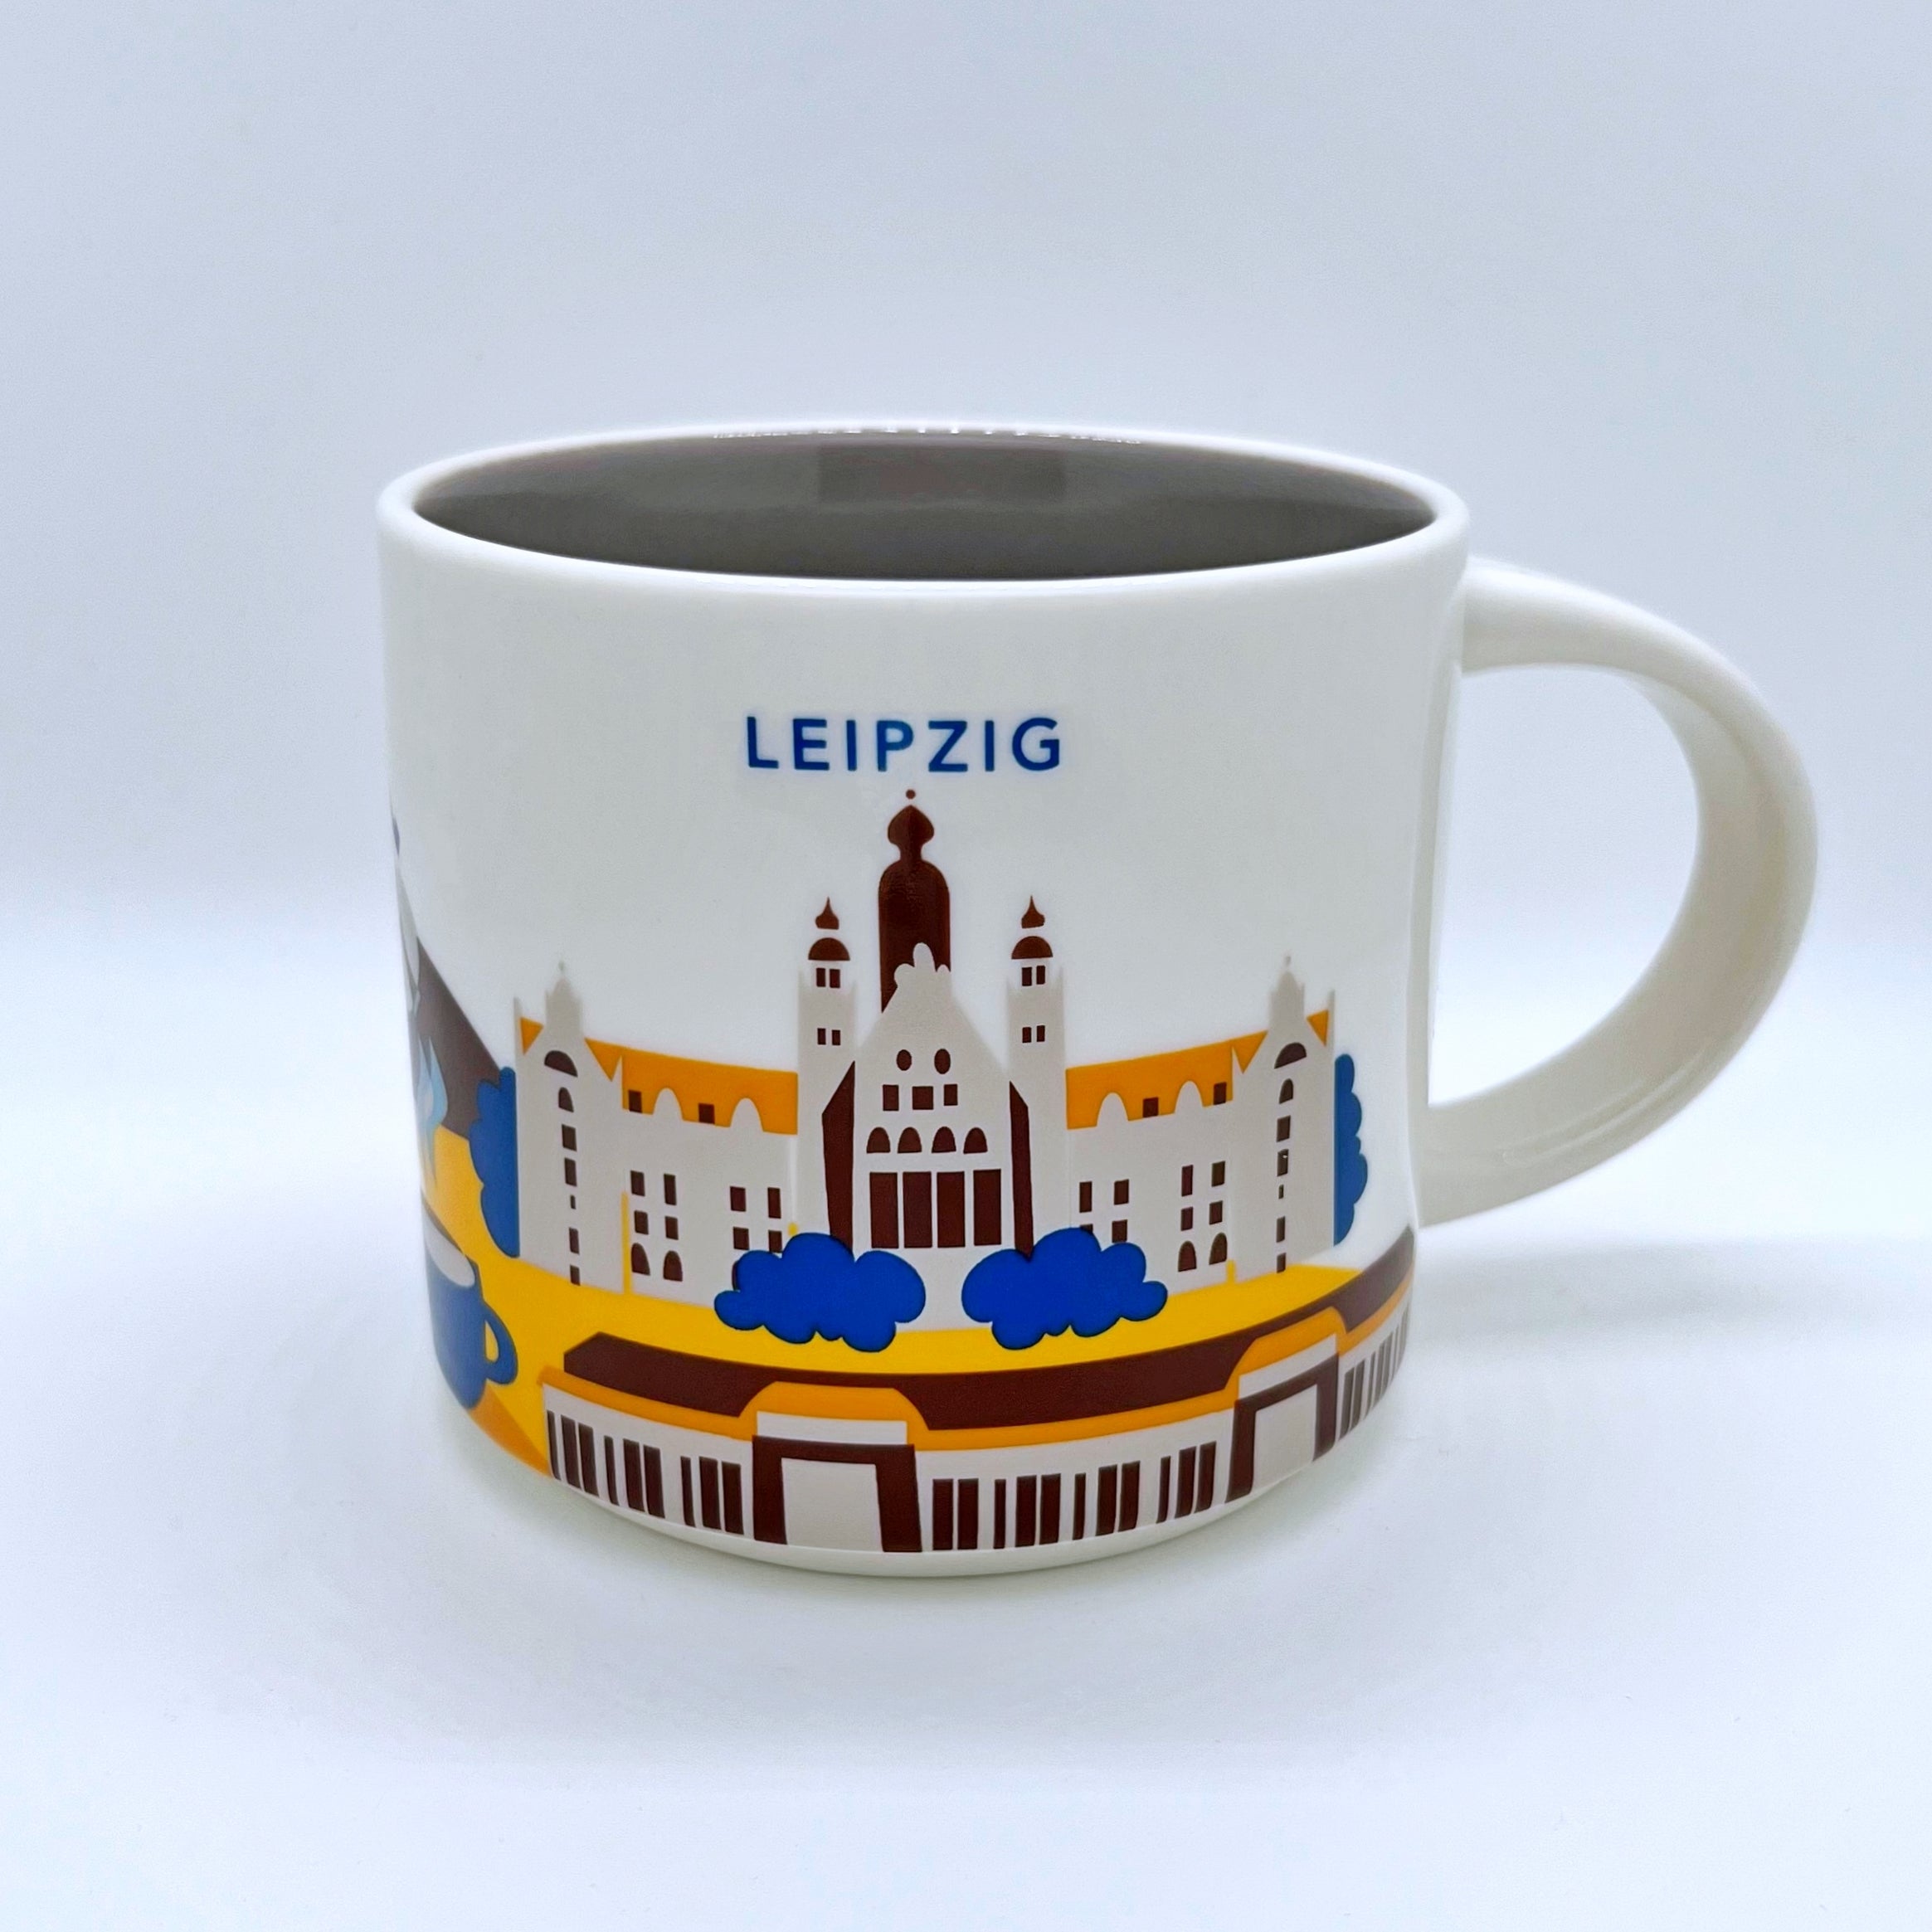 Kaffee Tee oder Cappuccino Tasse von Starbucks mit gemalten Bildern aus der Stadt Leipzig